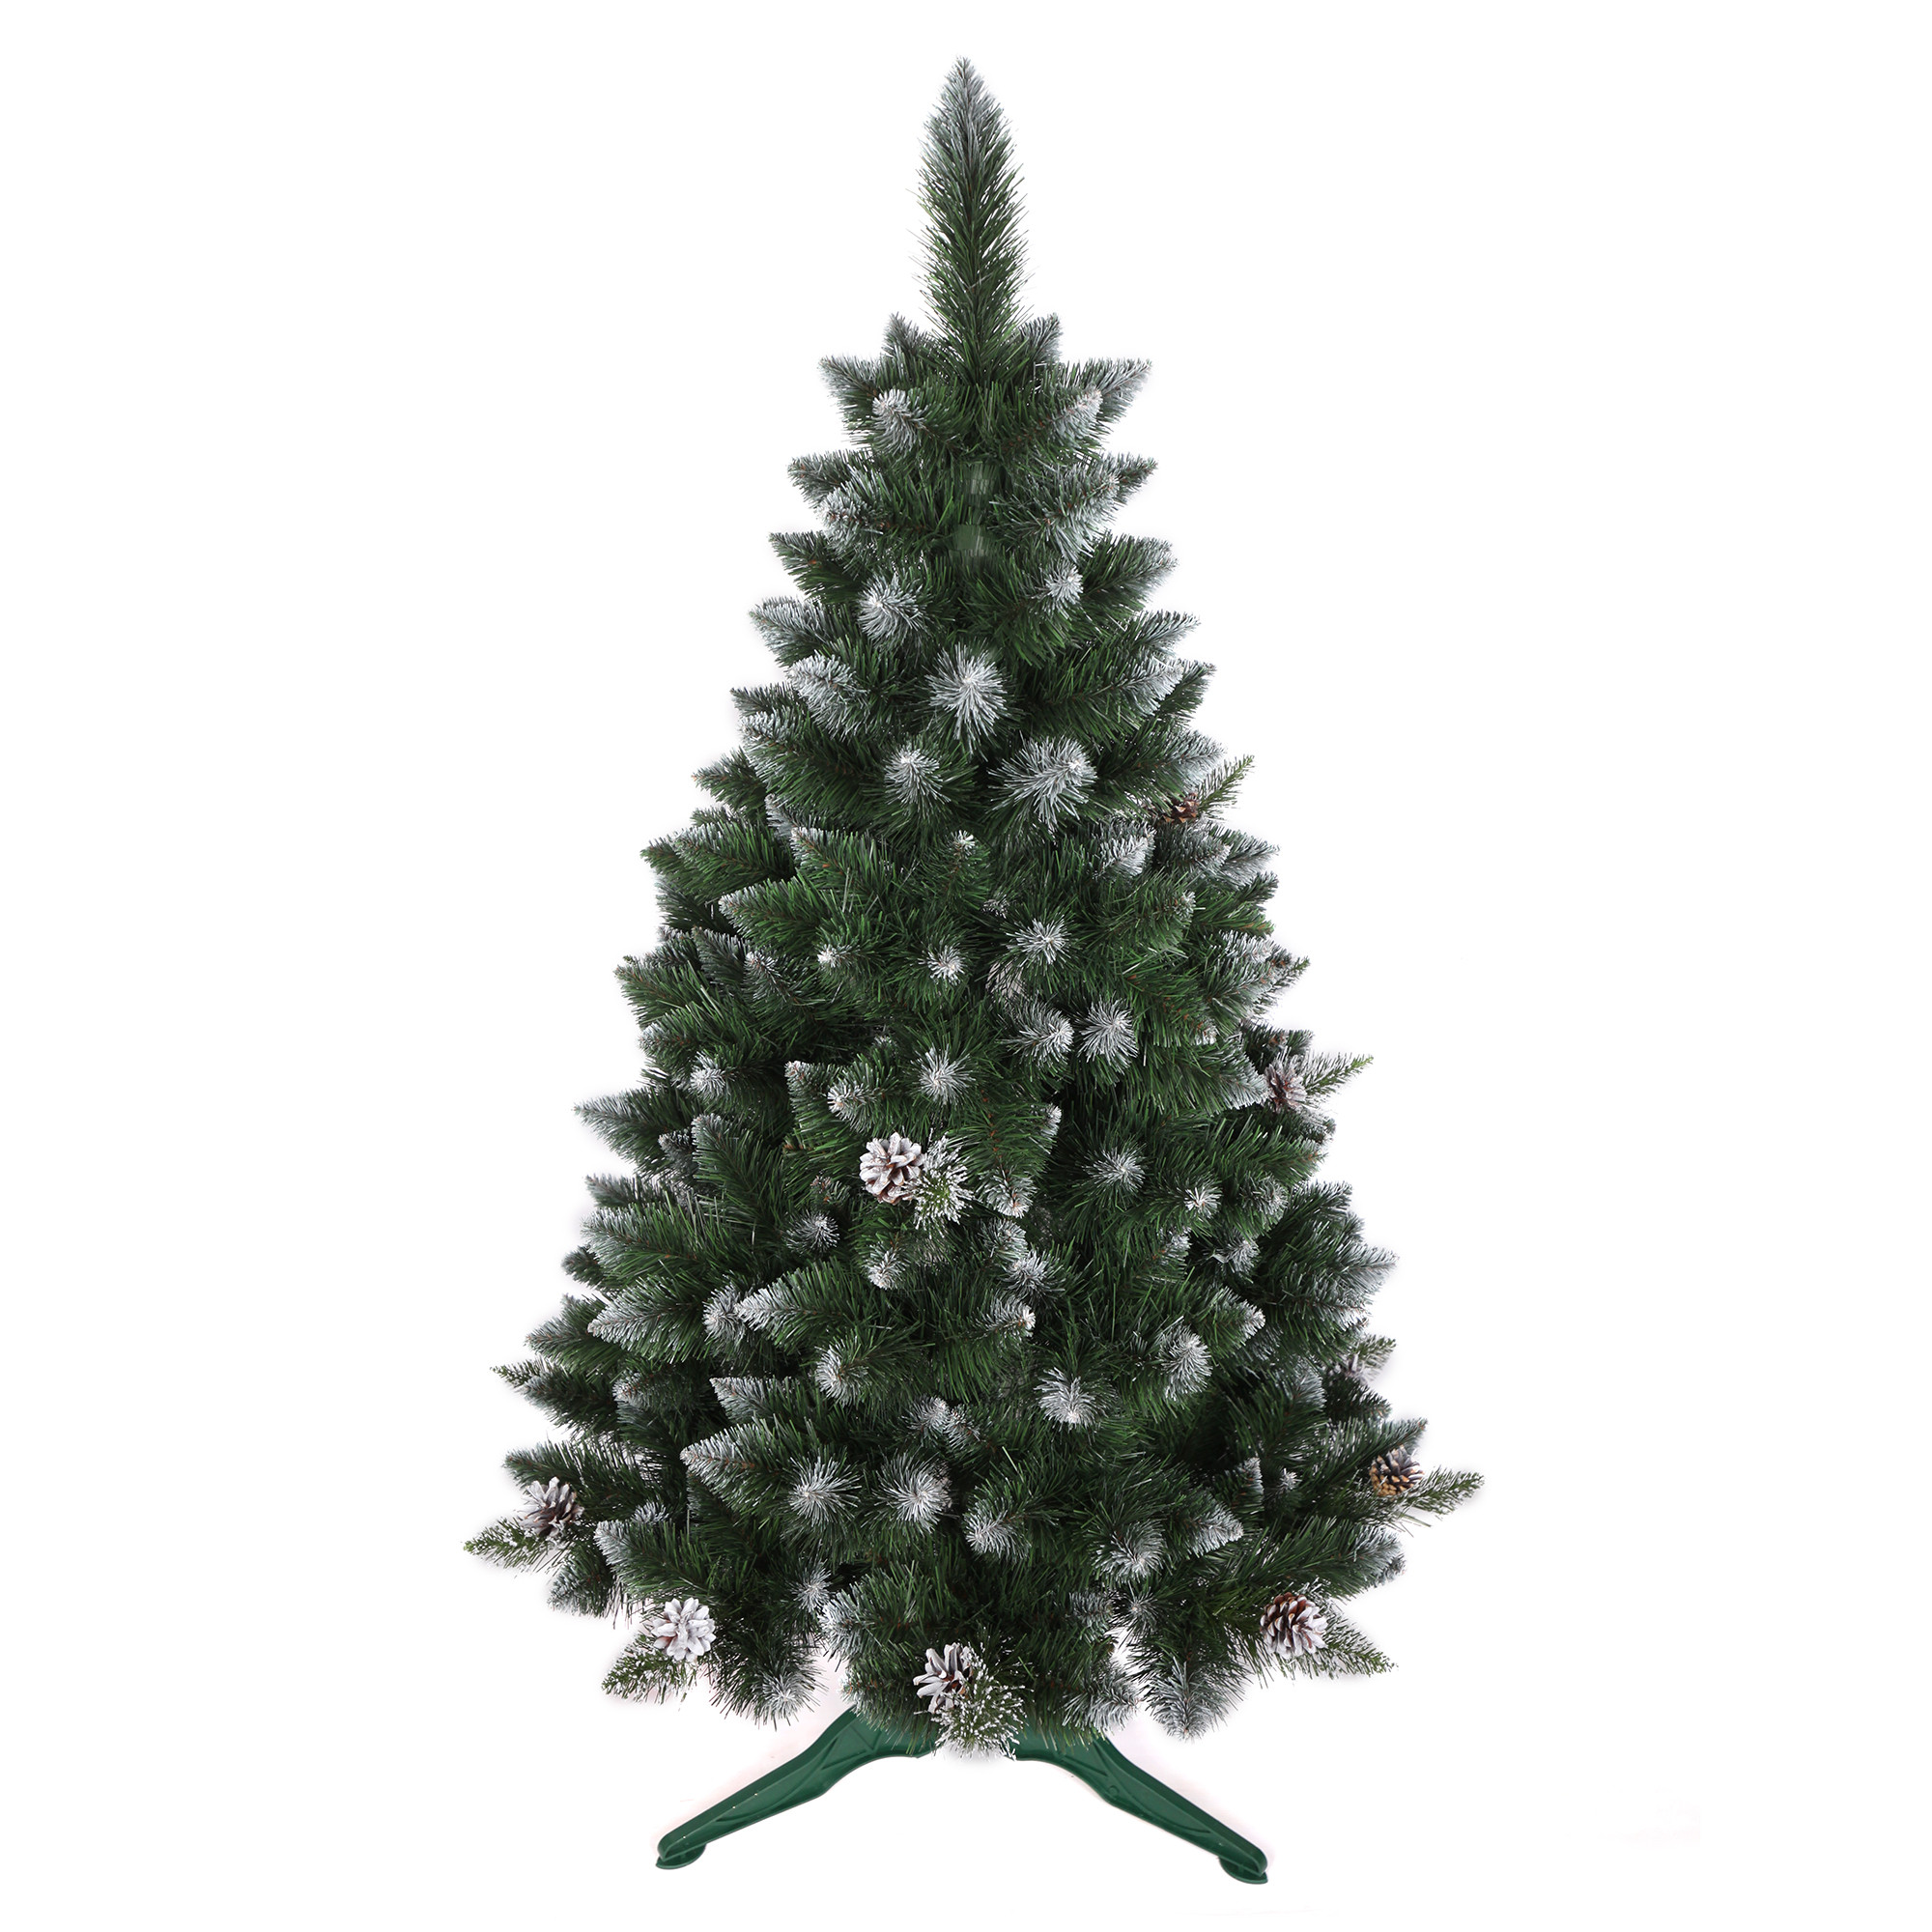 domtextilu.sk Vianočný stromček borovica so šiškami a kryštálikmi 150 cm 71022